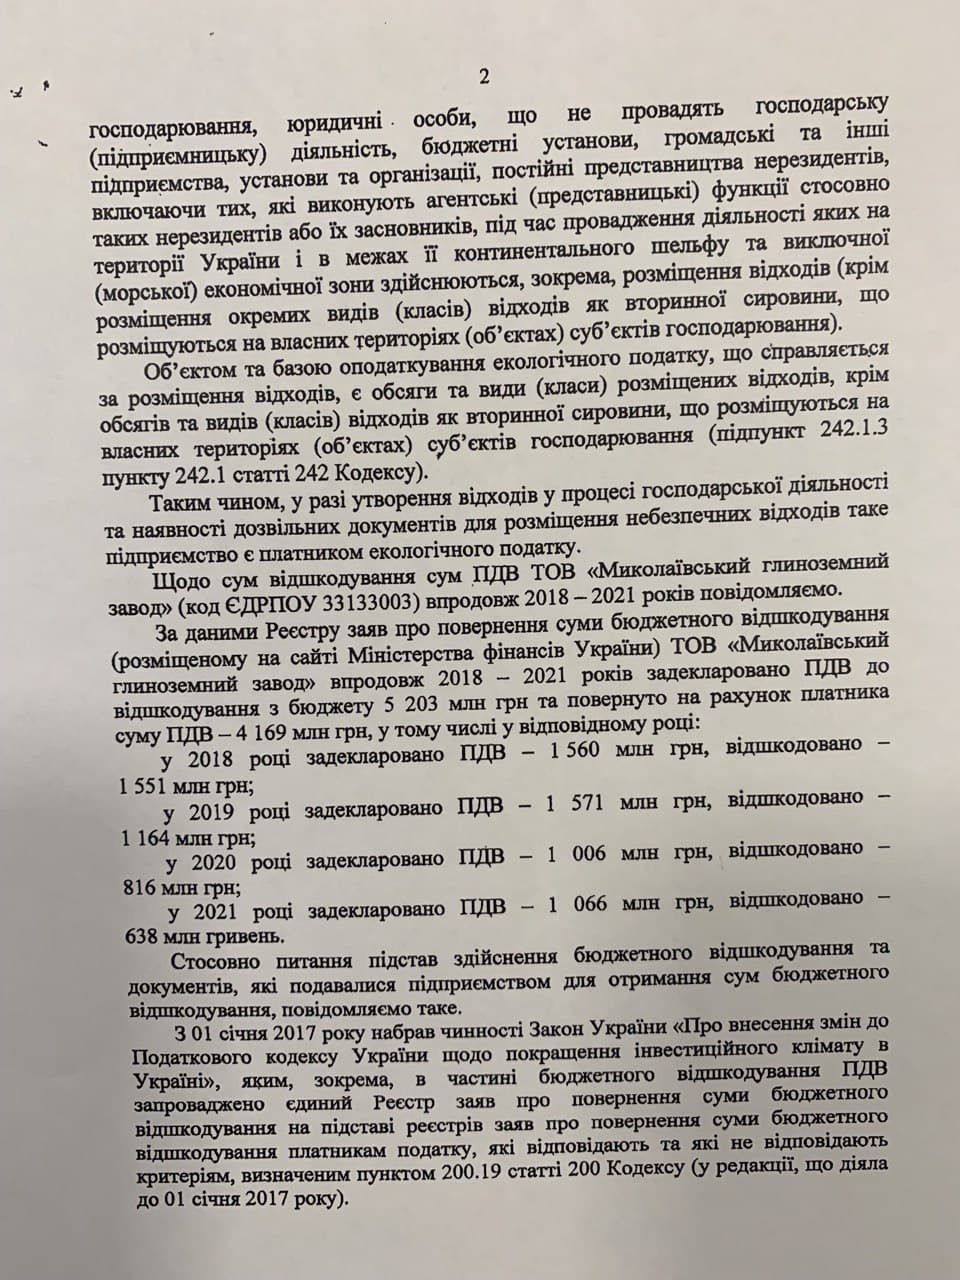 Миколаївський глиноземний завод отримує з держбюджету вп'ятеро більше компенсації ПДВ, ніж сплачує податків загалом фото 2